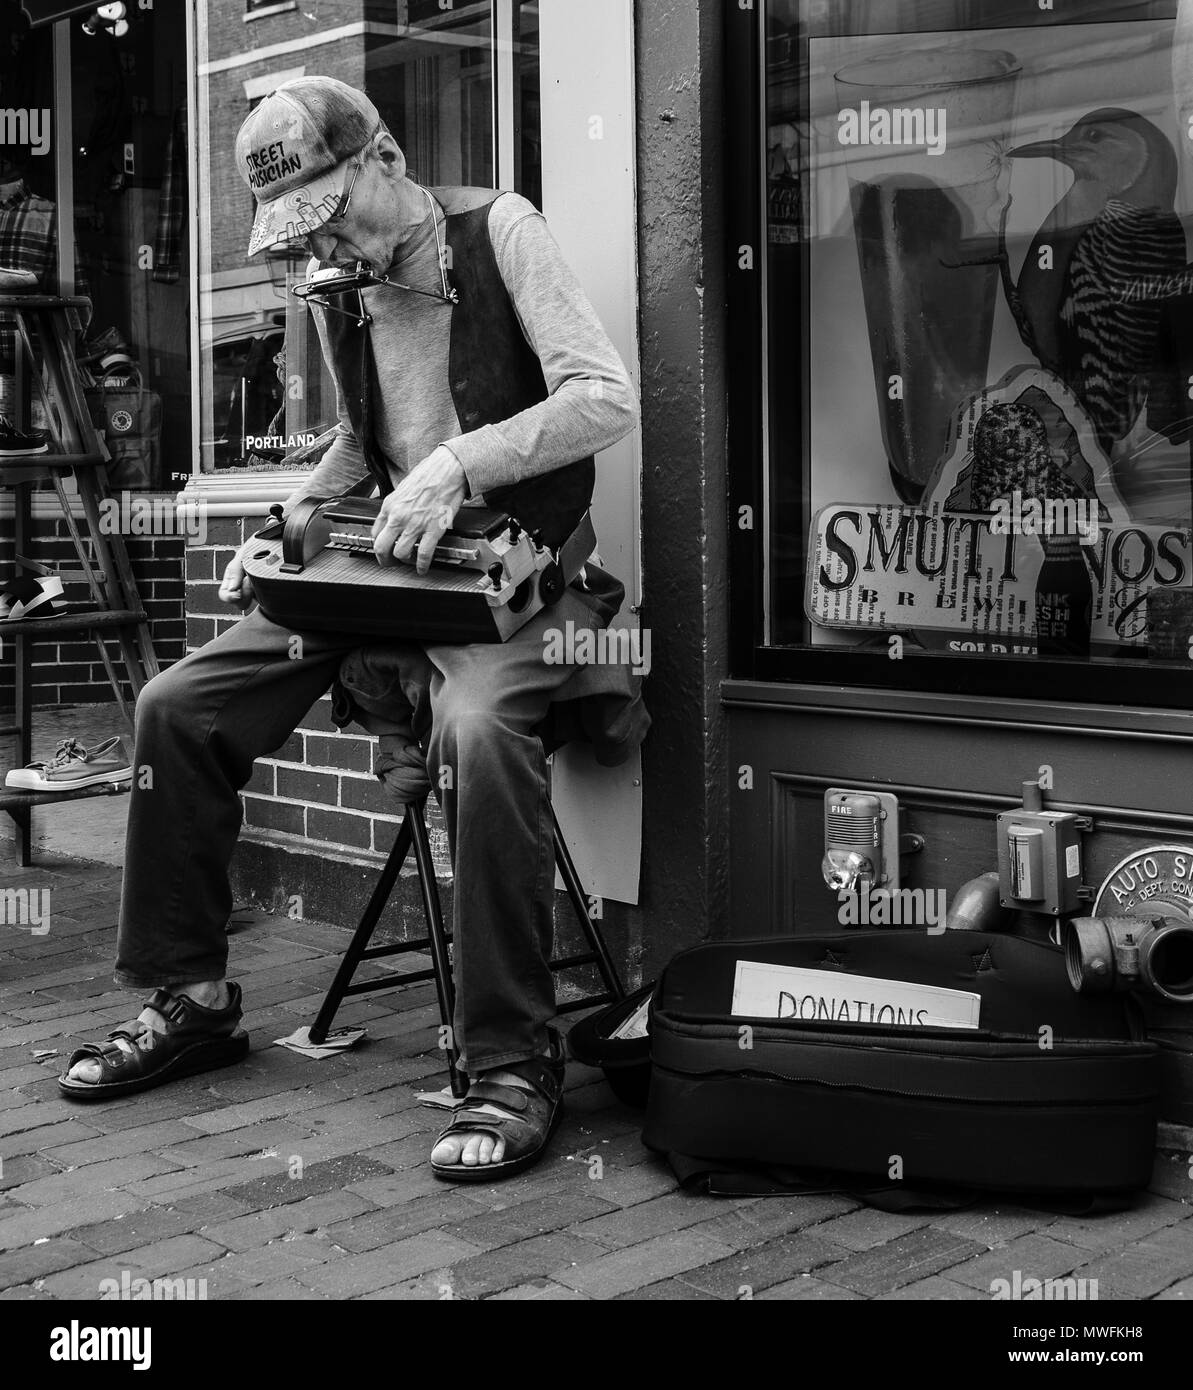 Un musicien de rue dans la région de Portsmouth, New Hampshire, joue sur son instrument de musique fait maison Banque D'Images